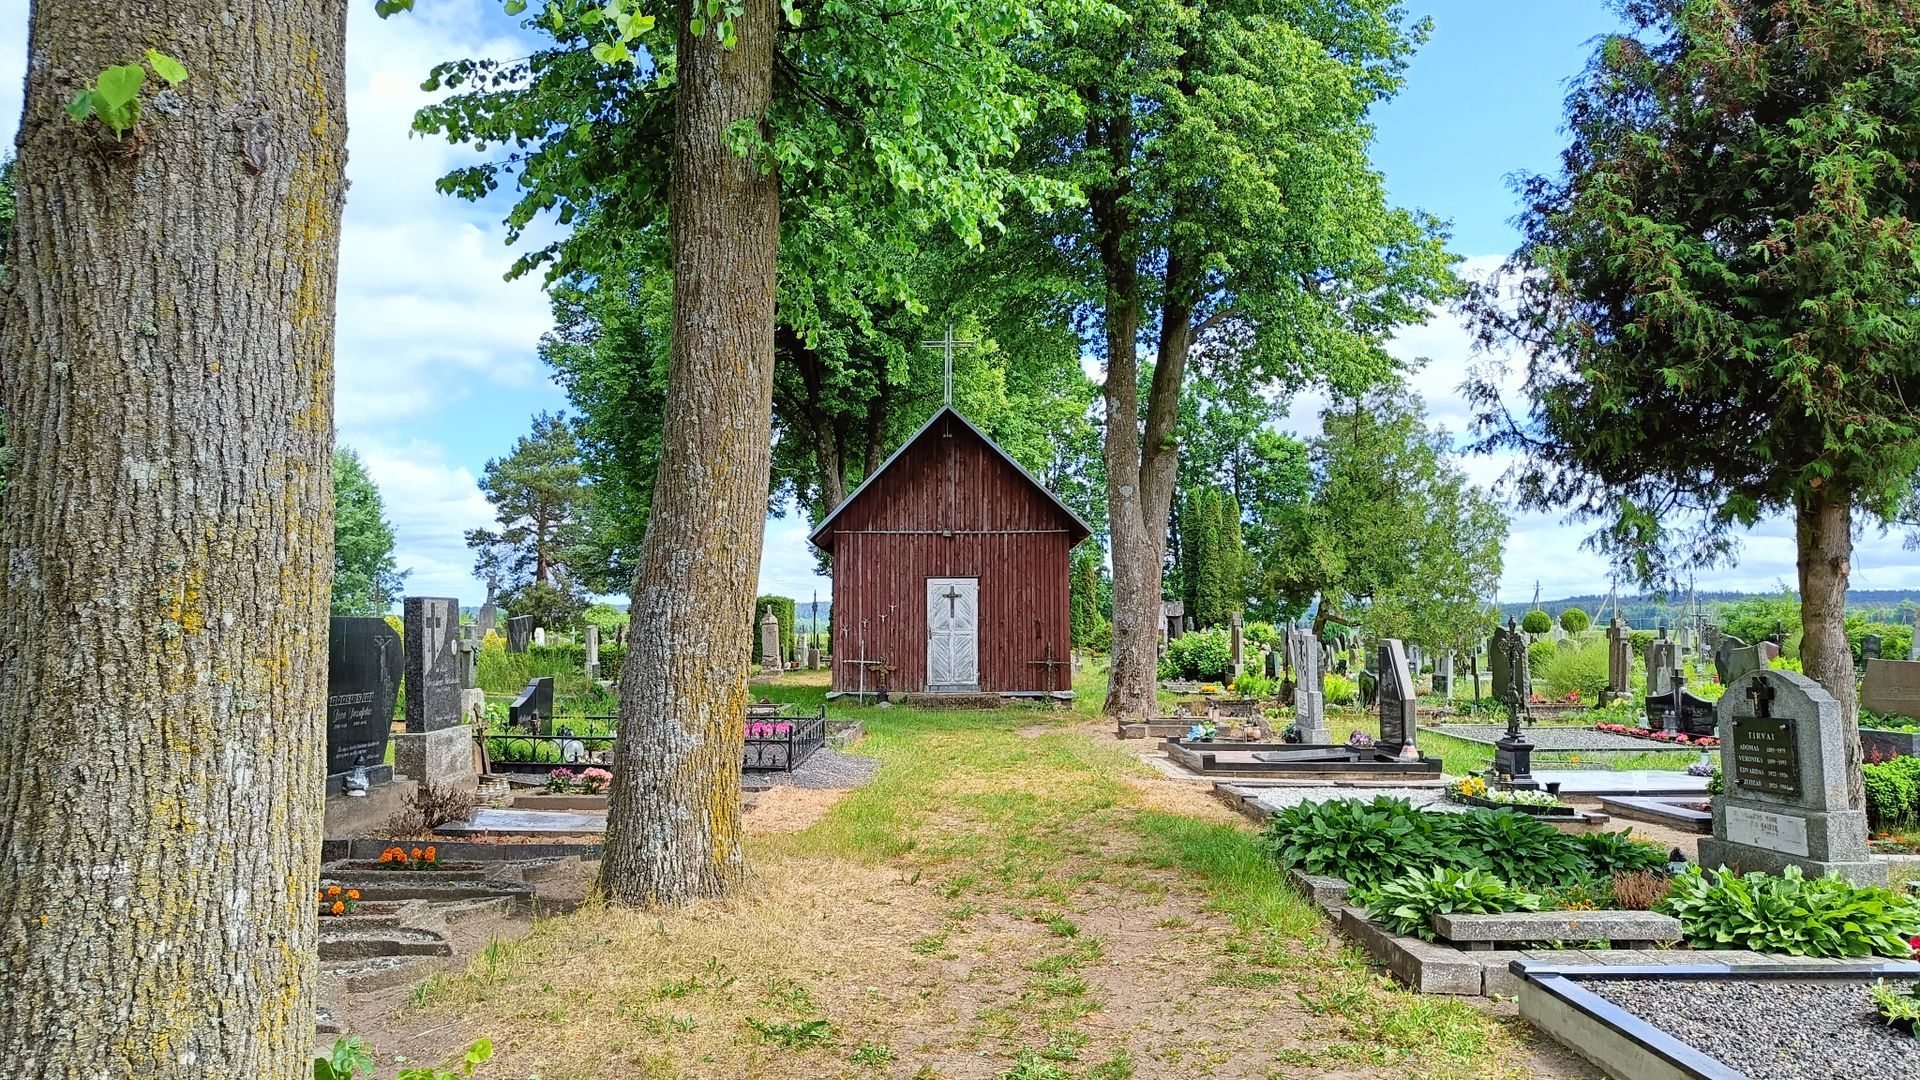 Darsūniškis Cemetery Chapel